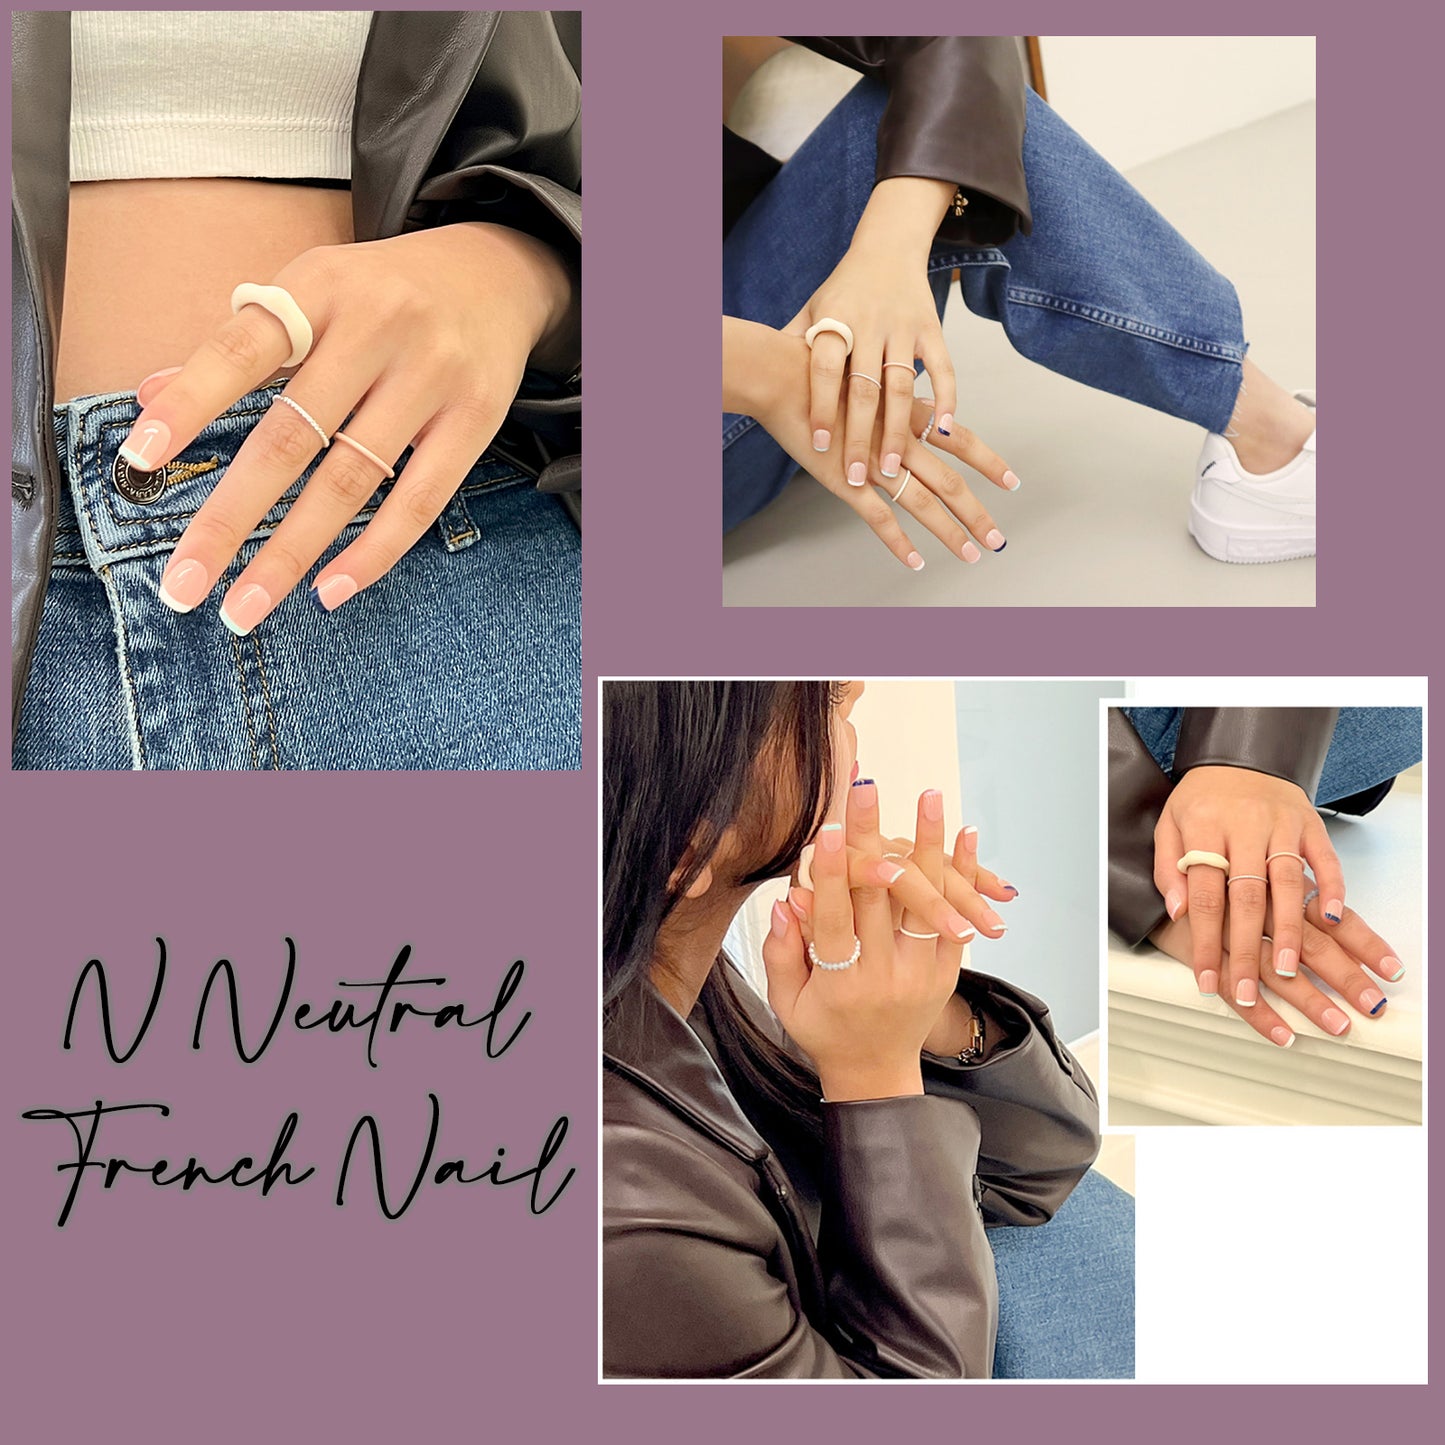 Muzmak (N Neutral French Nail) 36pcs Nail Art Pattern Sticker Set Semicure Nail